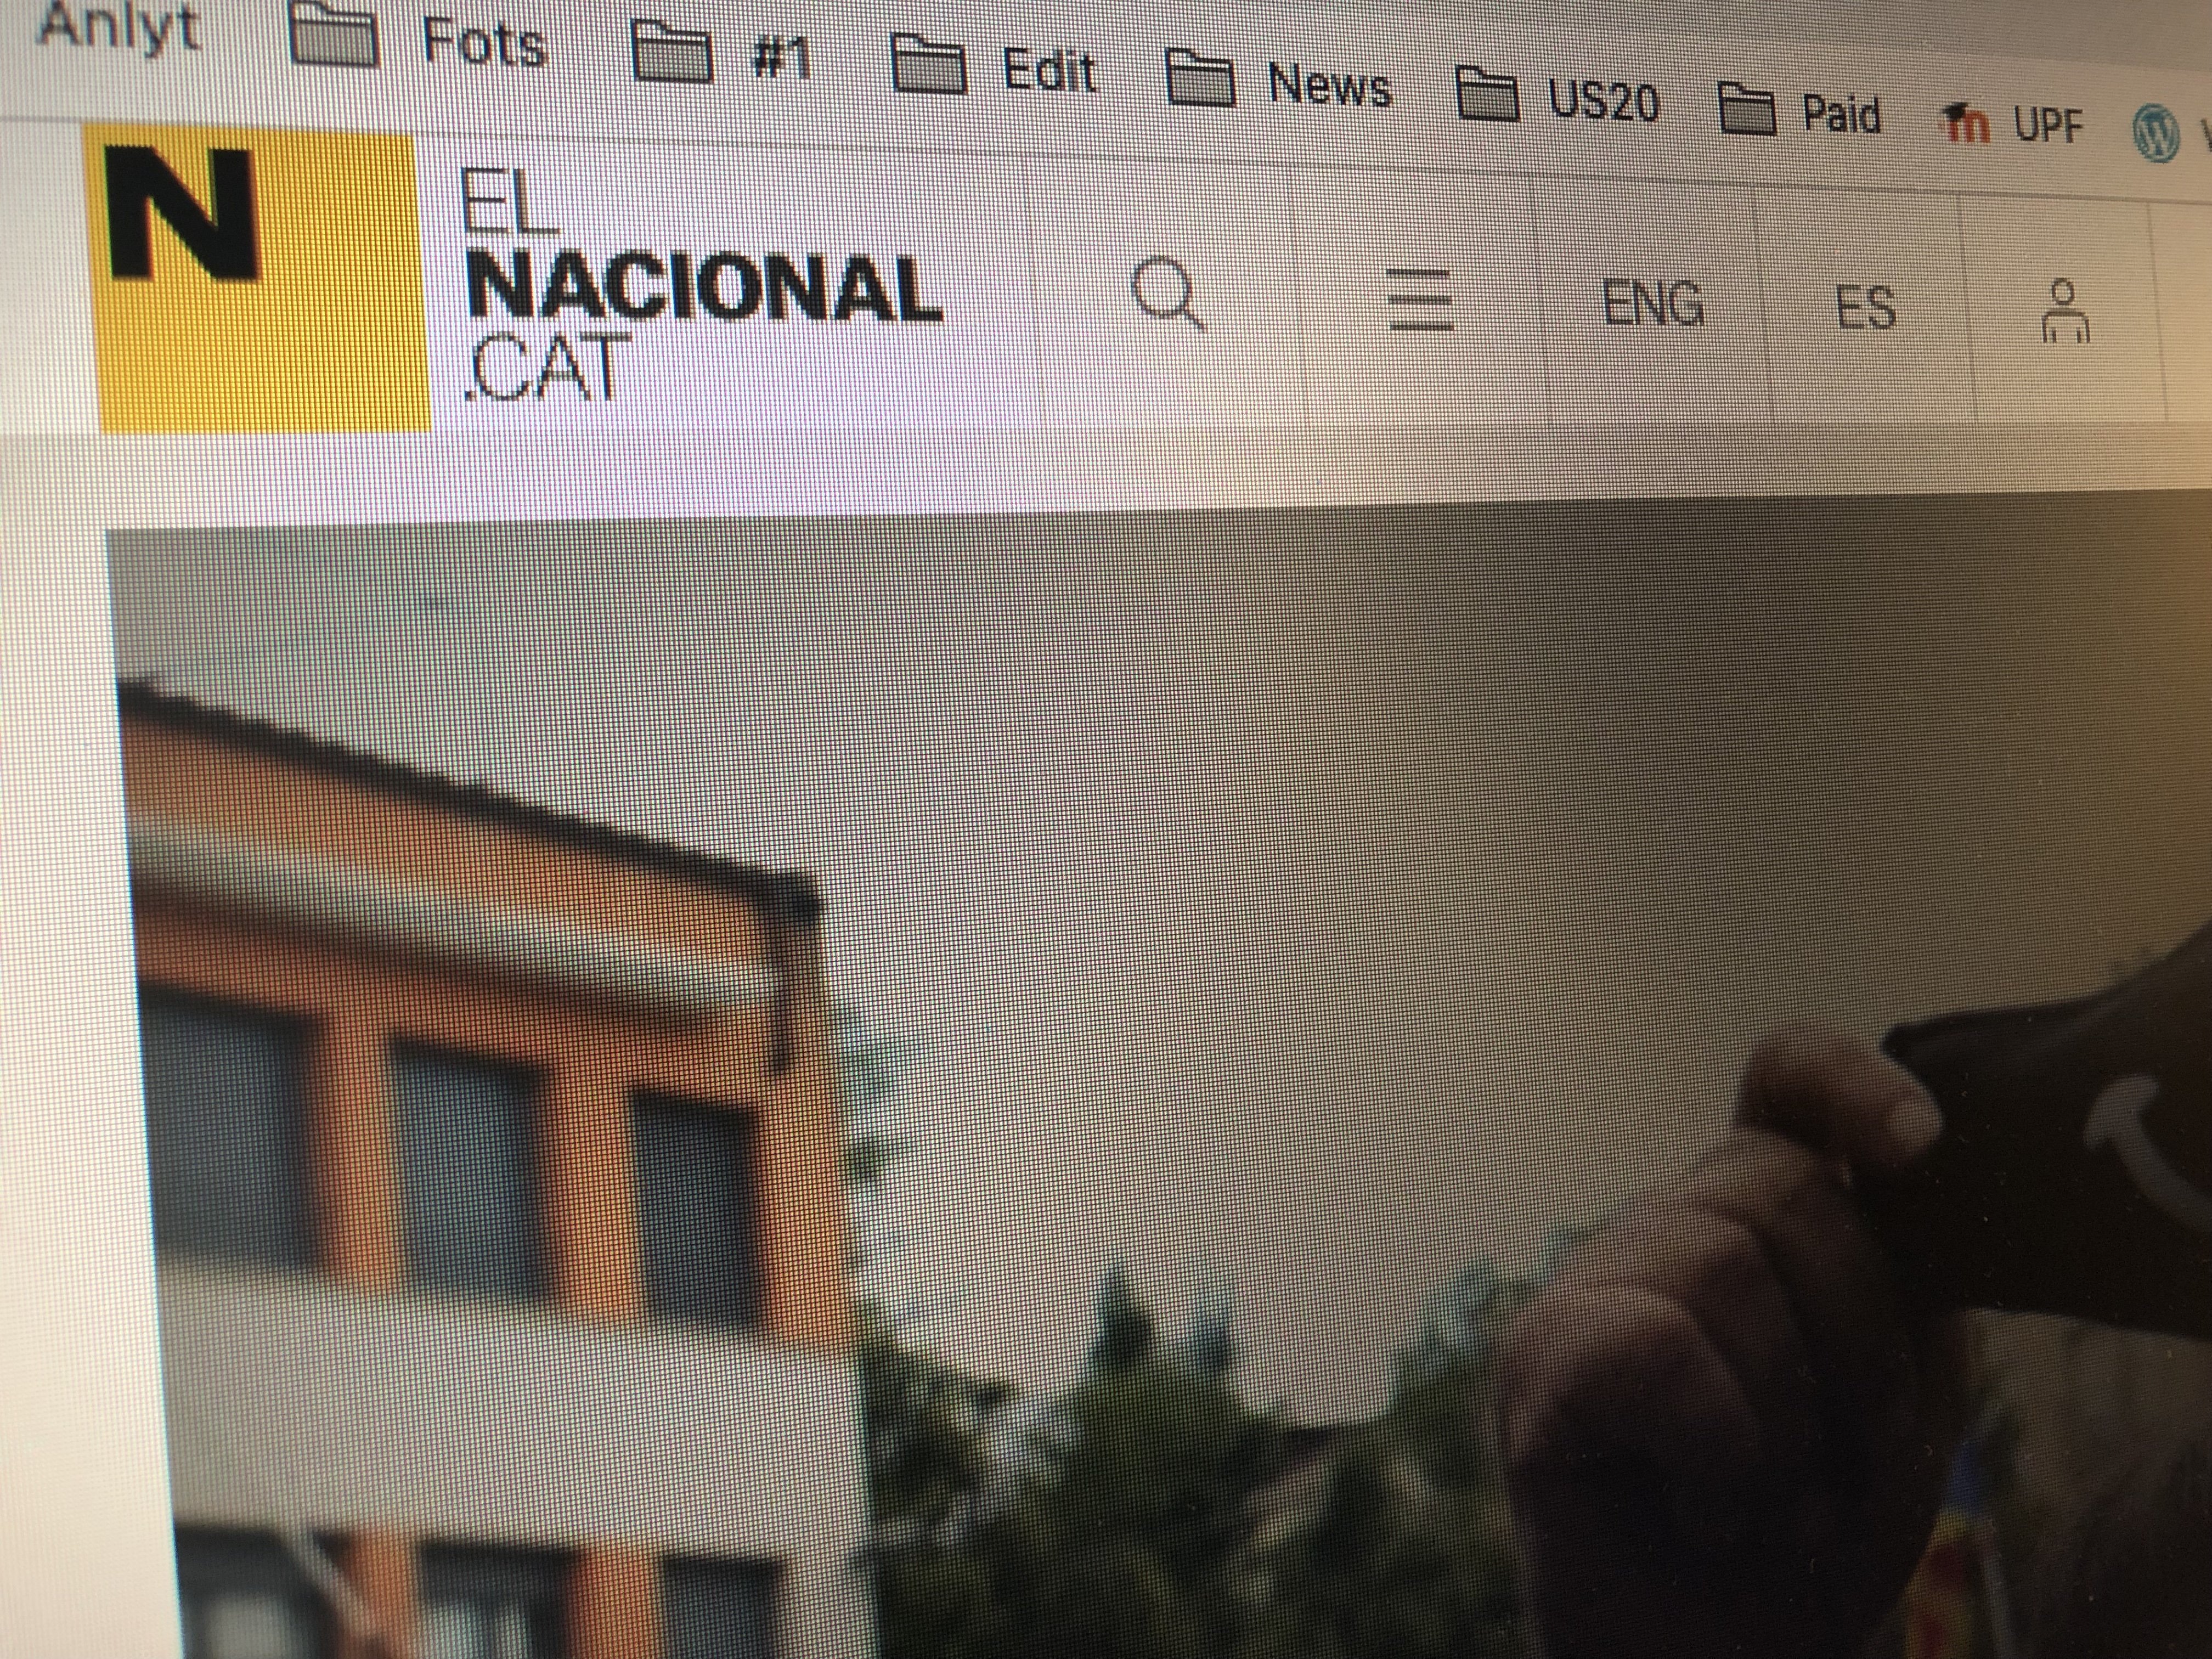 La Generalitat beneficia el digital y el catalán por encima del papel en la publicidad oficial